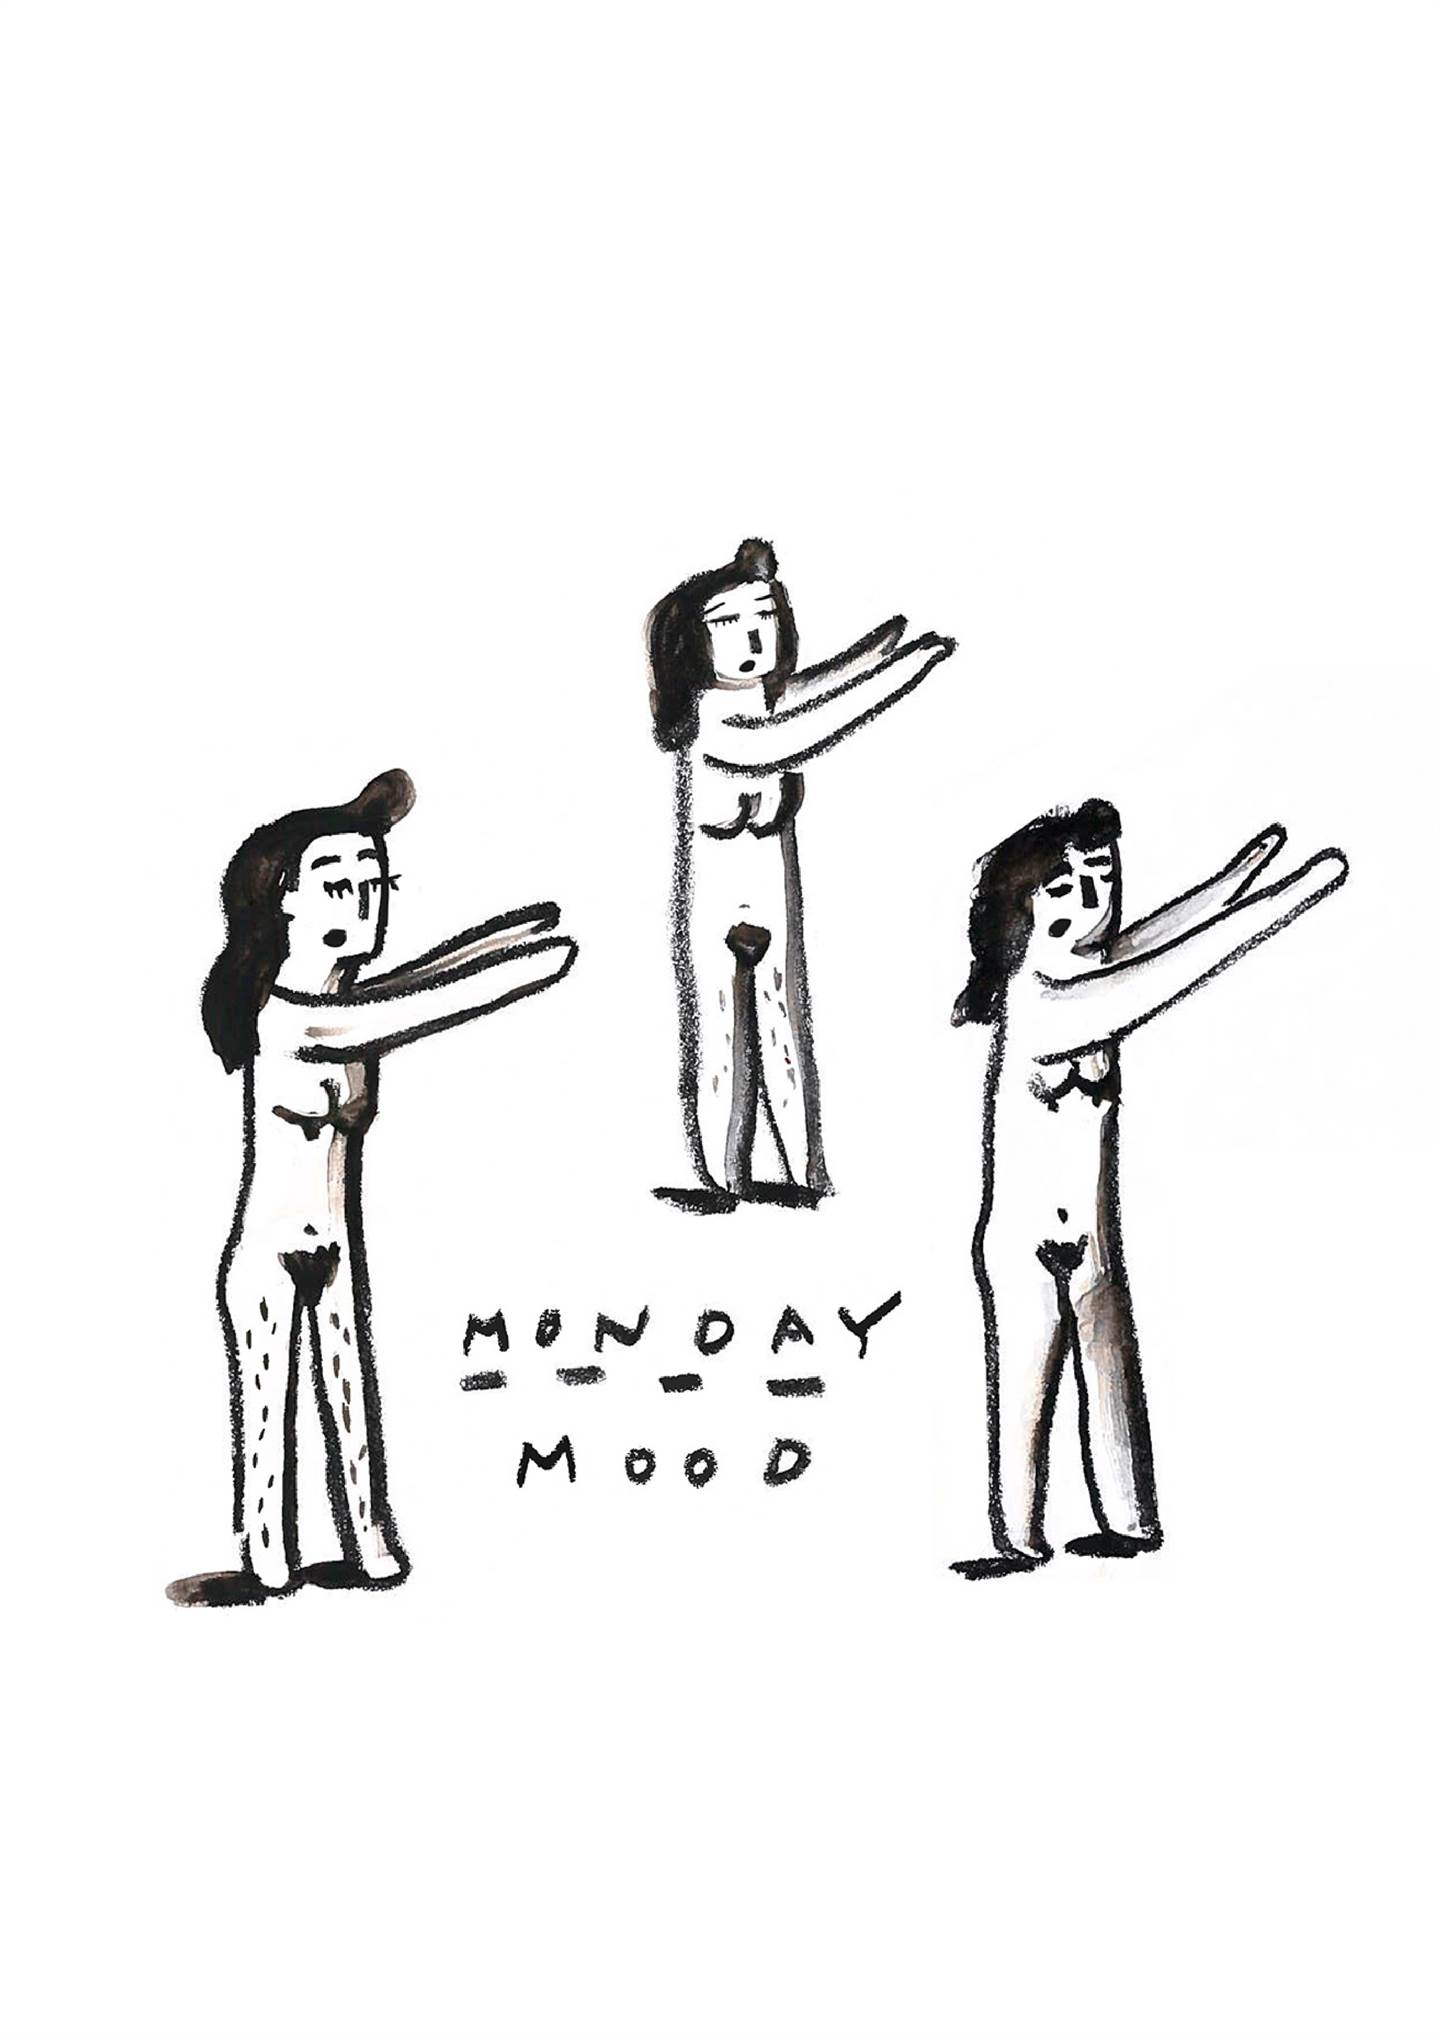 Monday Mood, Desenho e Ilustração Digital Corpo original por Shut Up  Claudia